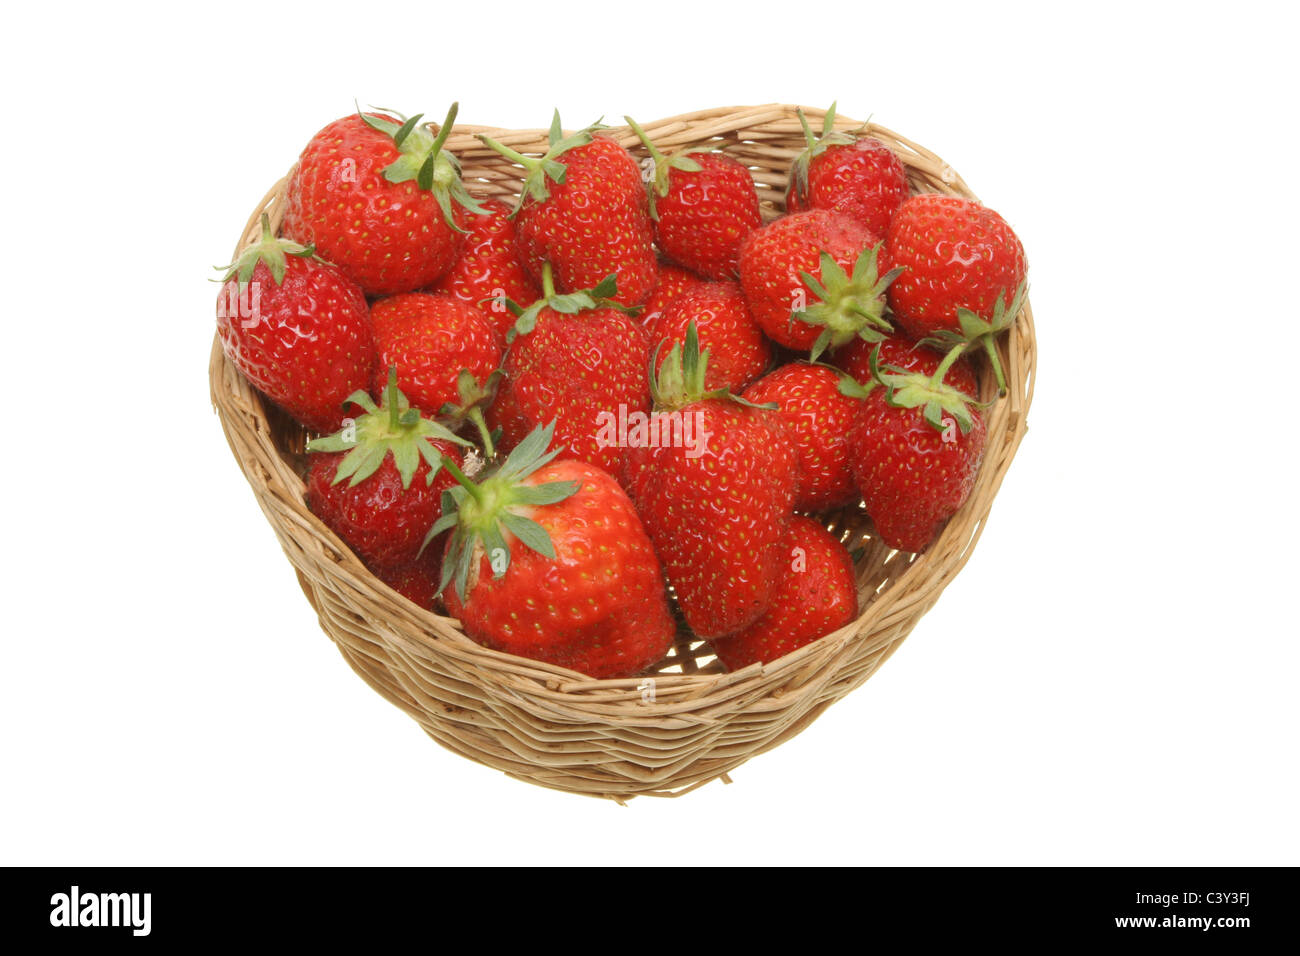 Les fraises mûres fraîches dans un panier en forme de coeur Banque D'Images